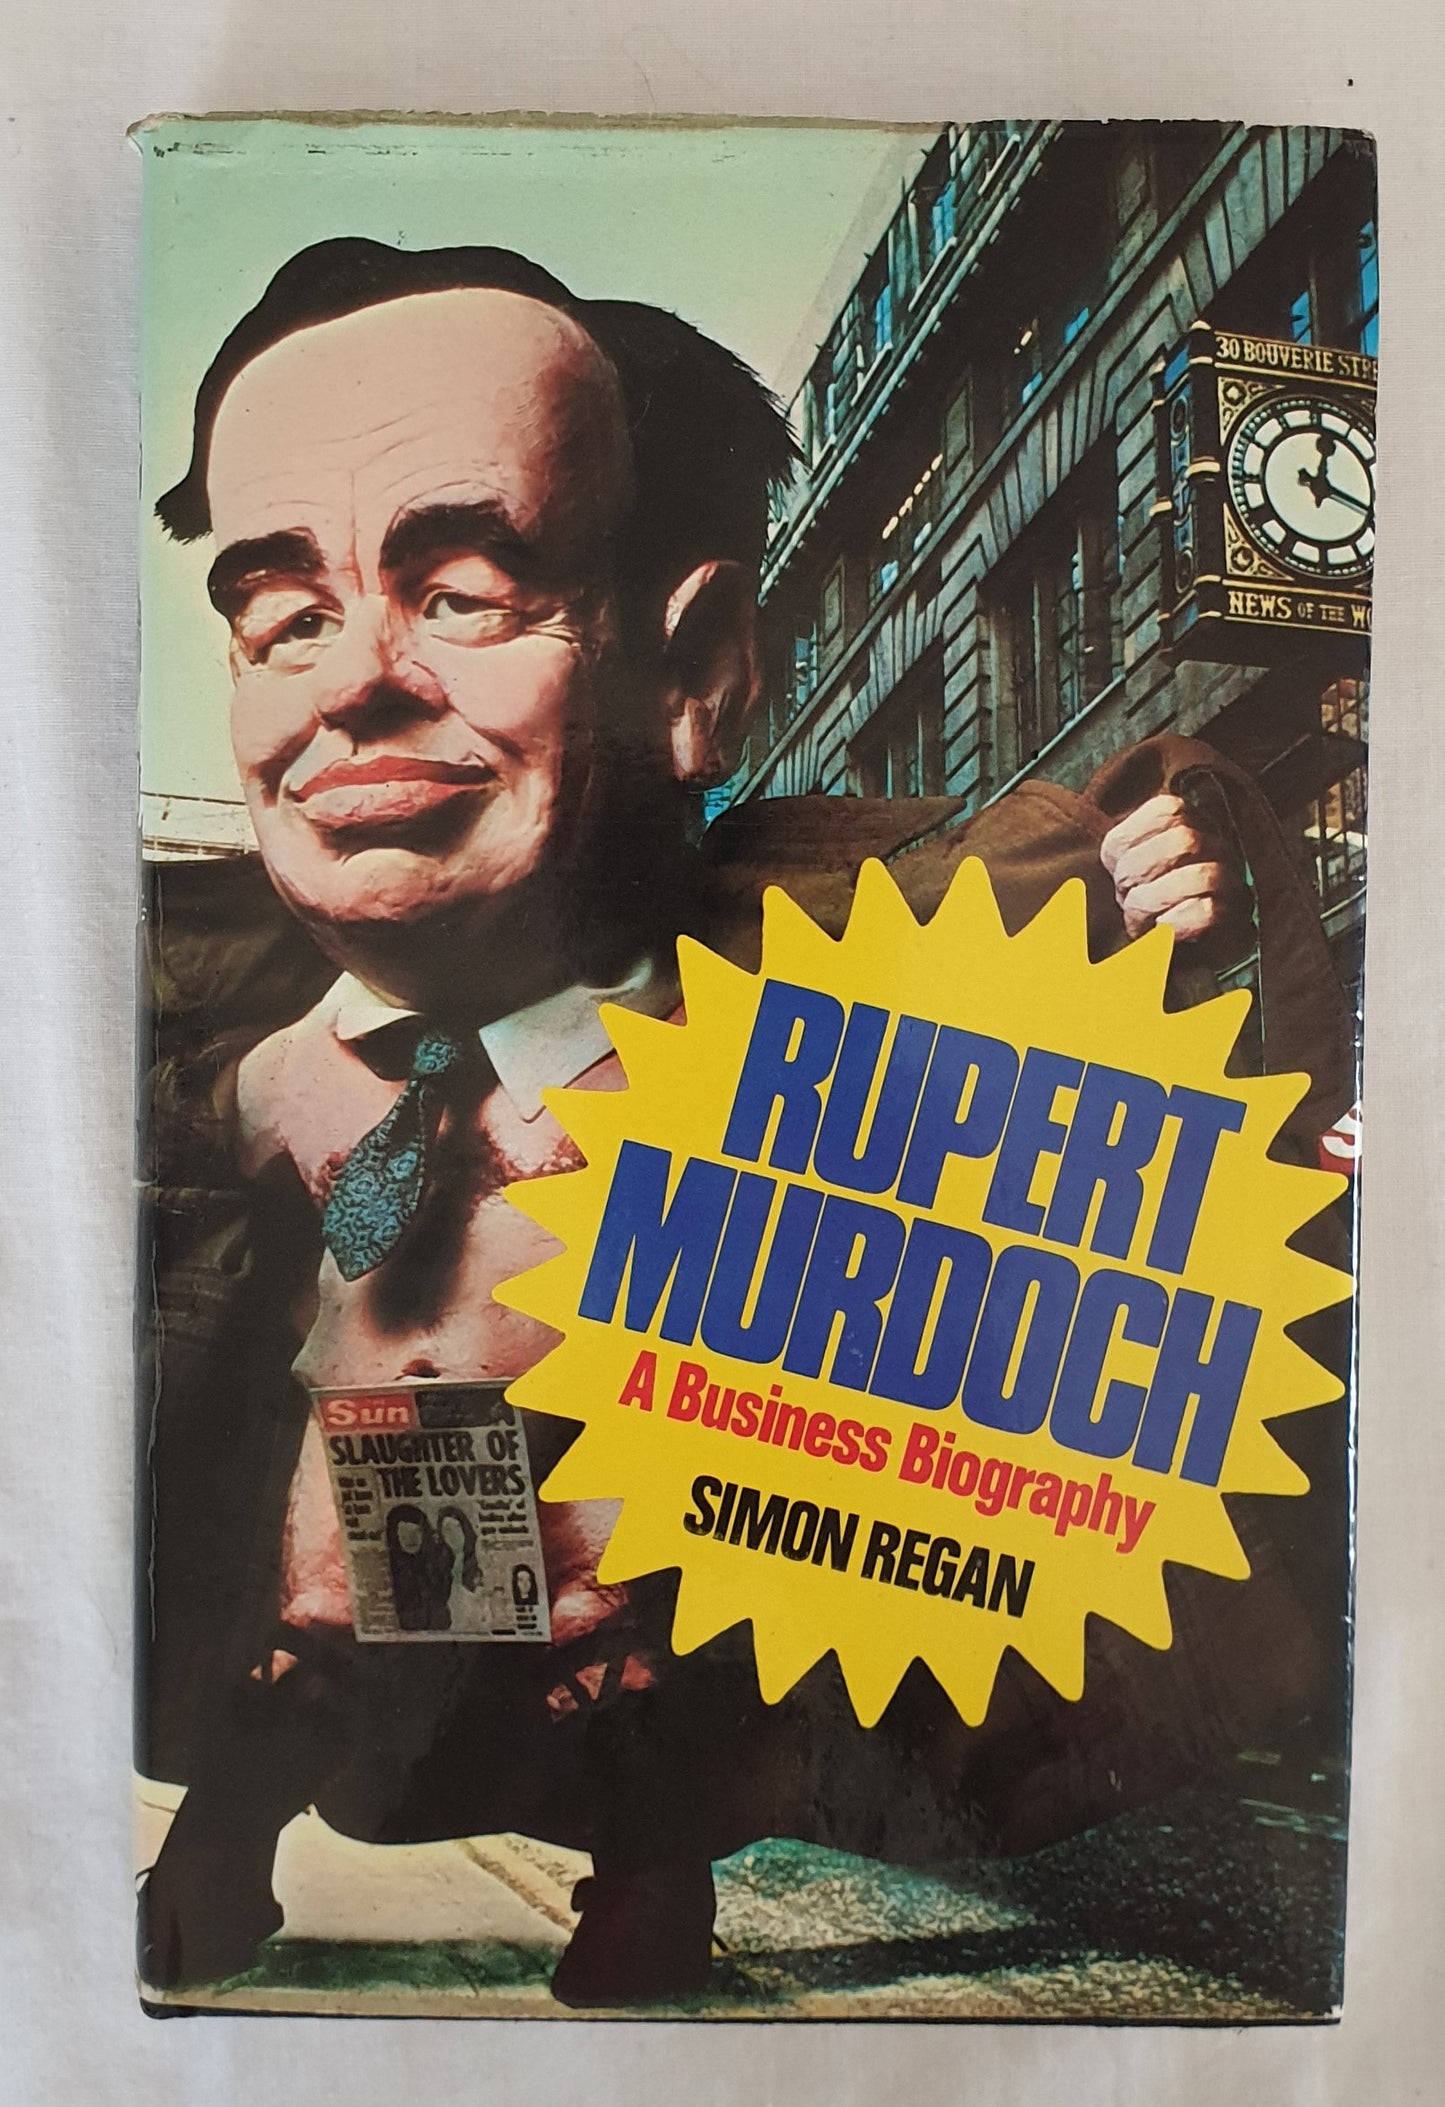 Rupert Murdoch  A Business Biography  by Simon Regan